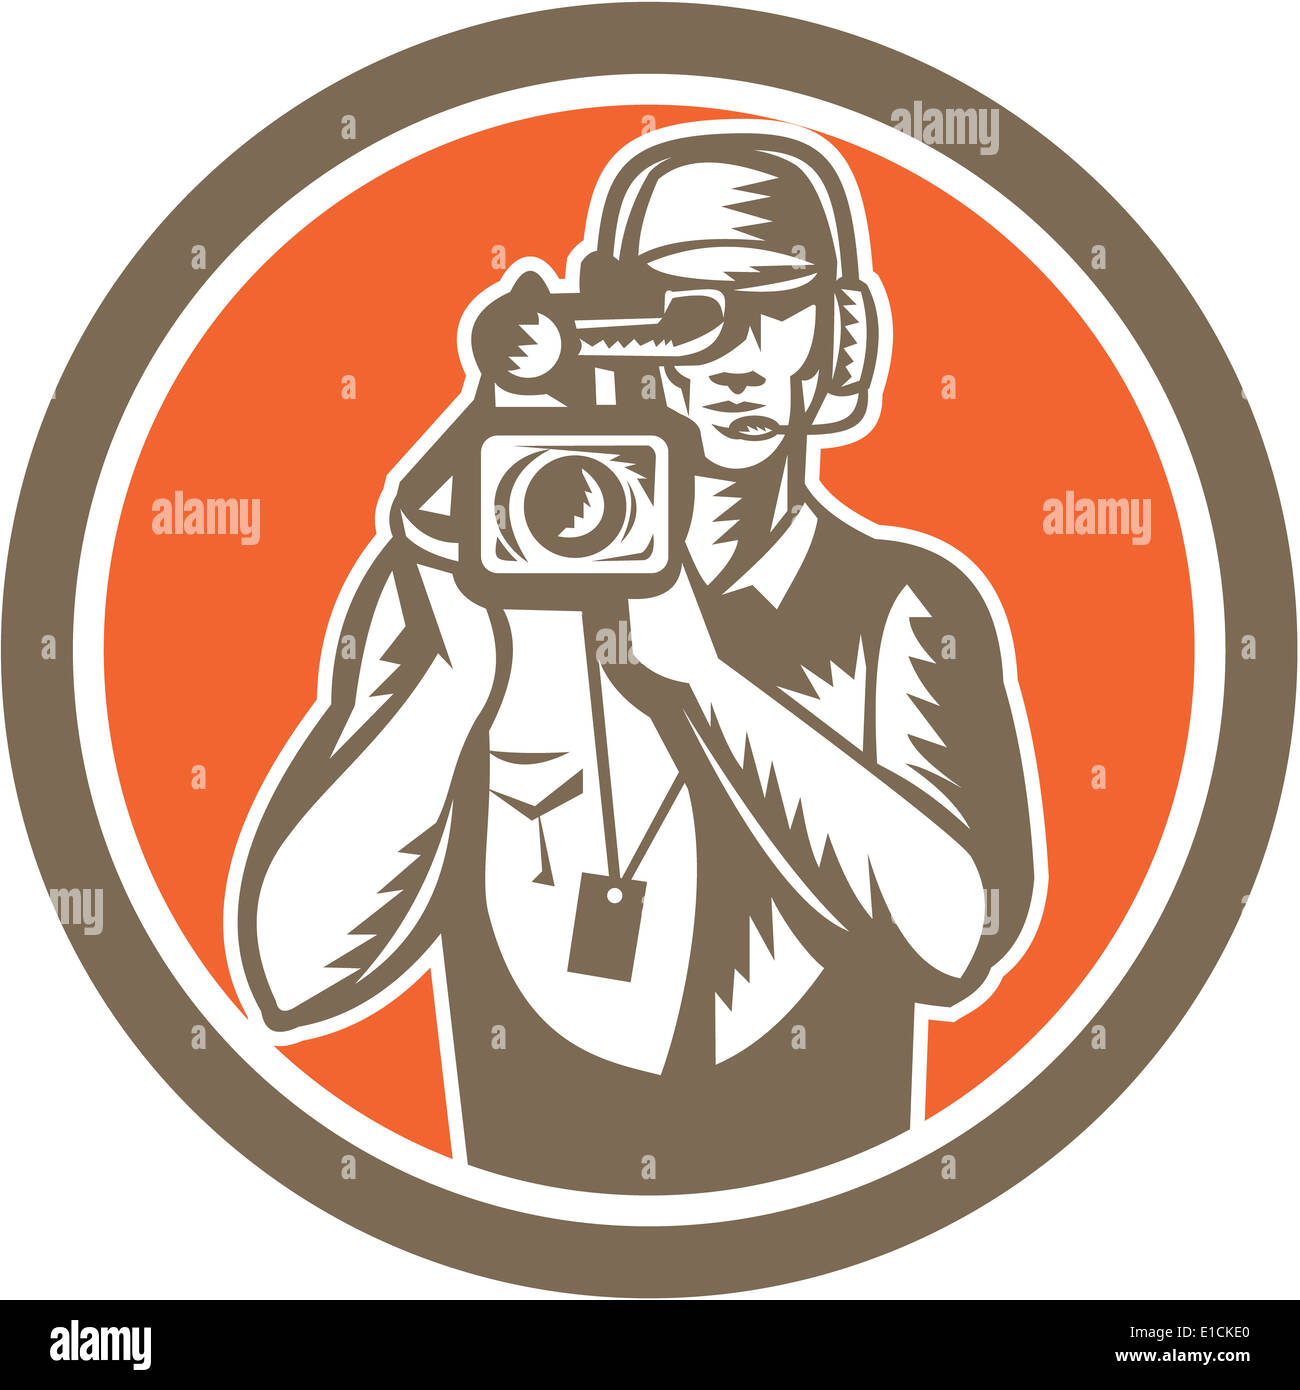 Illustration d'un cameraman film director holding vintage tournage film video caméra réglée à l'intérieur du cercle fait en style rétro. Banque D'Images